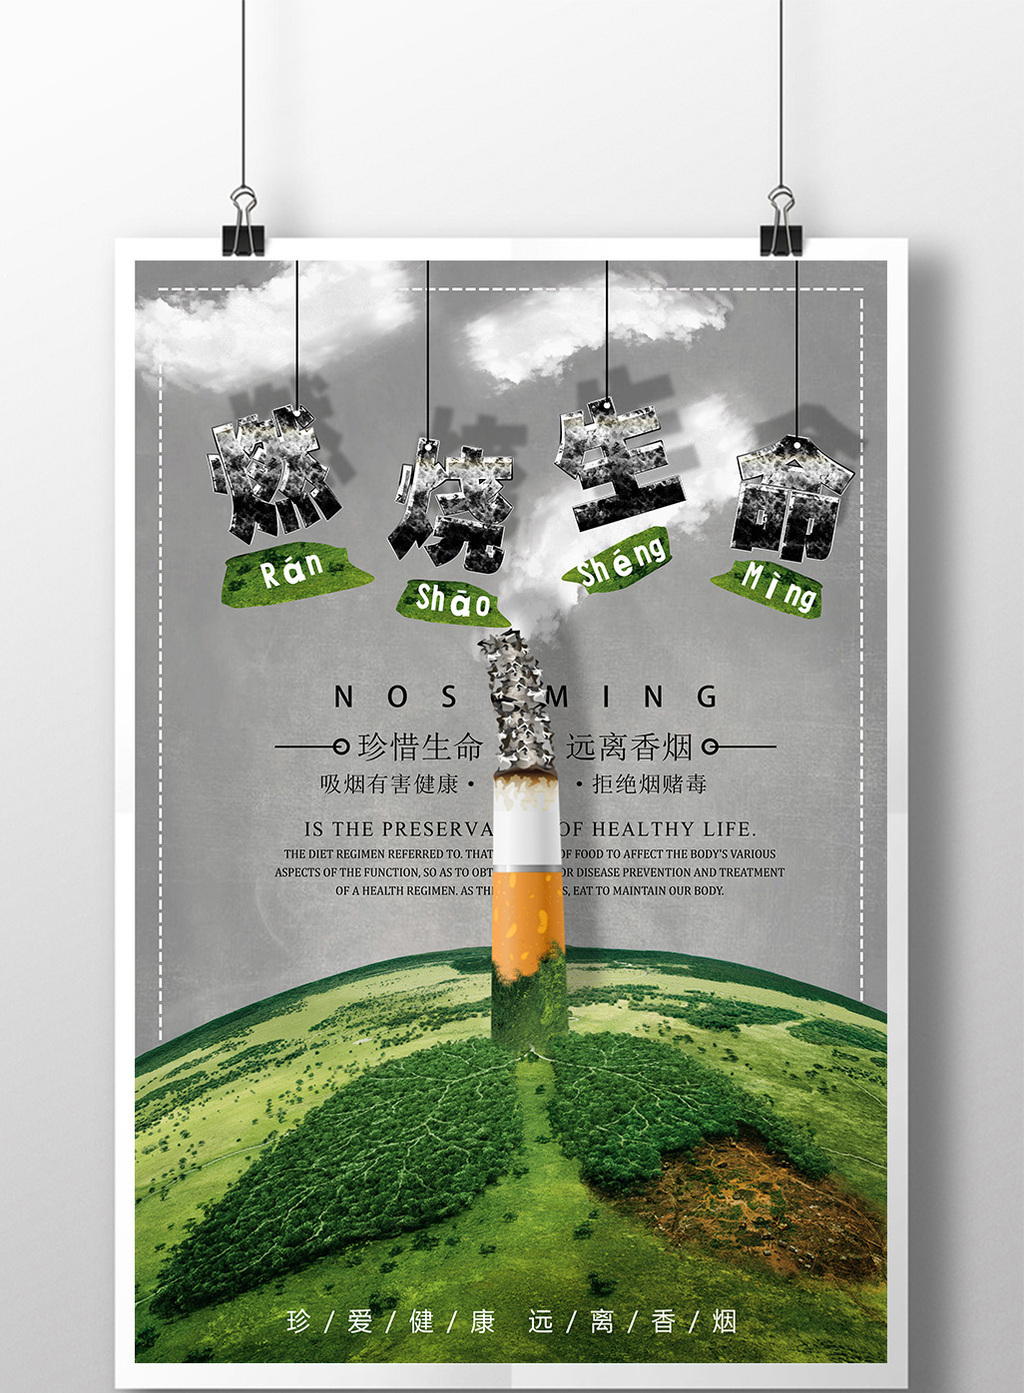 震撼创意吸烟燃烧生命公益宣传海报模板免费下载 _广告设计图片设计素材_【包图网】